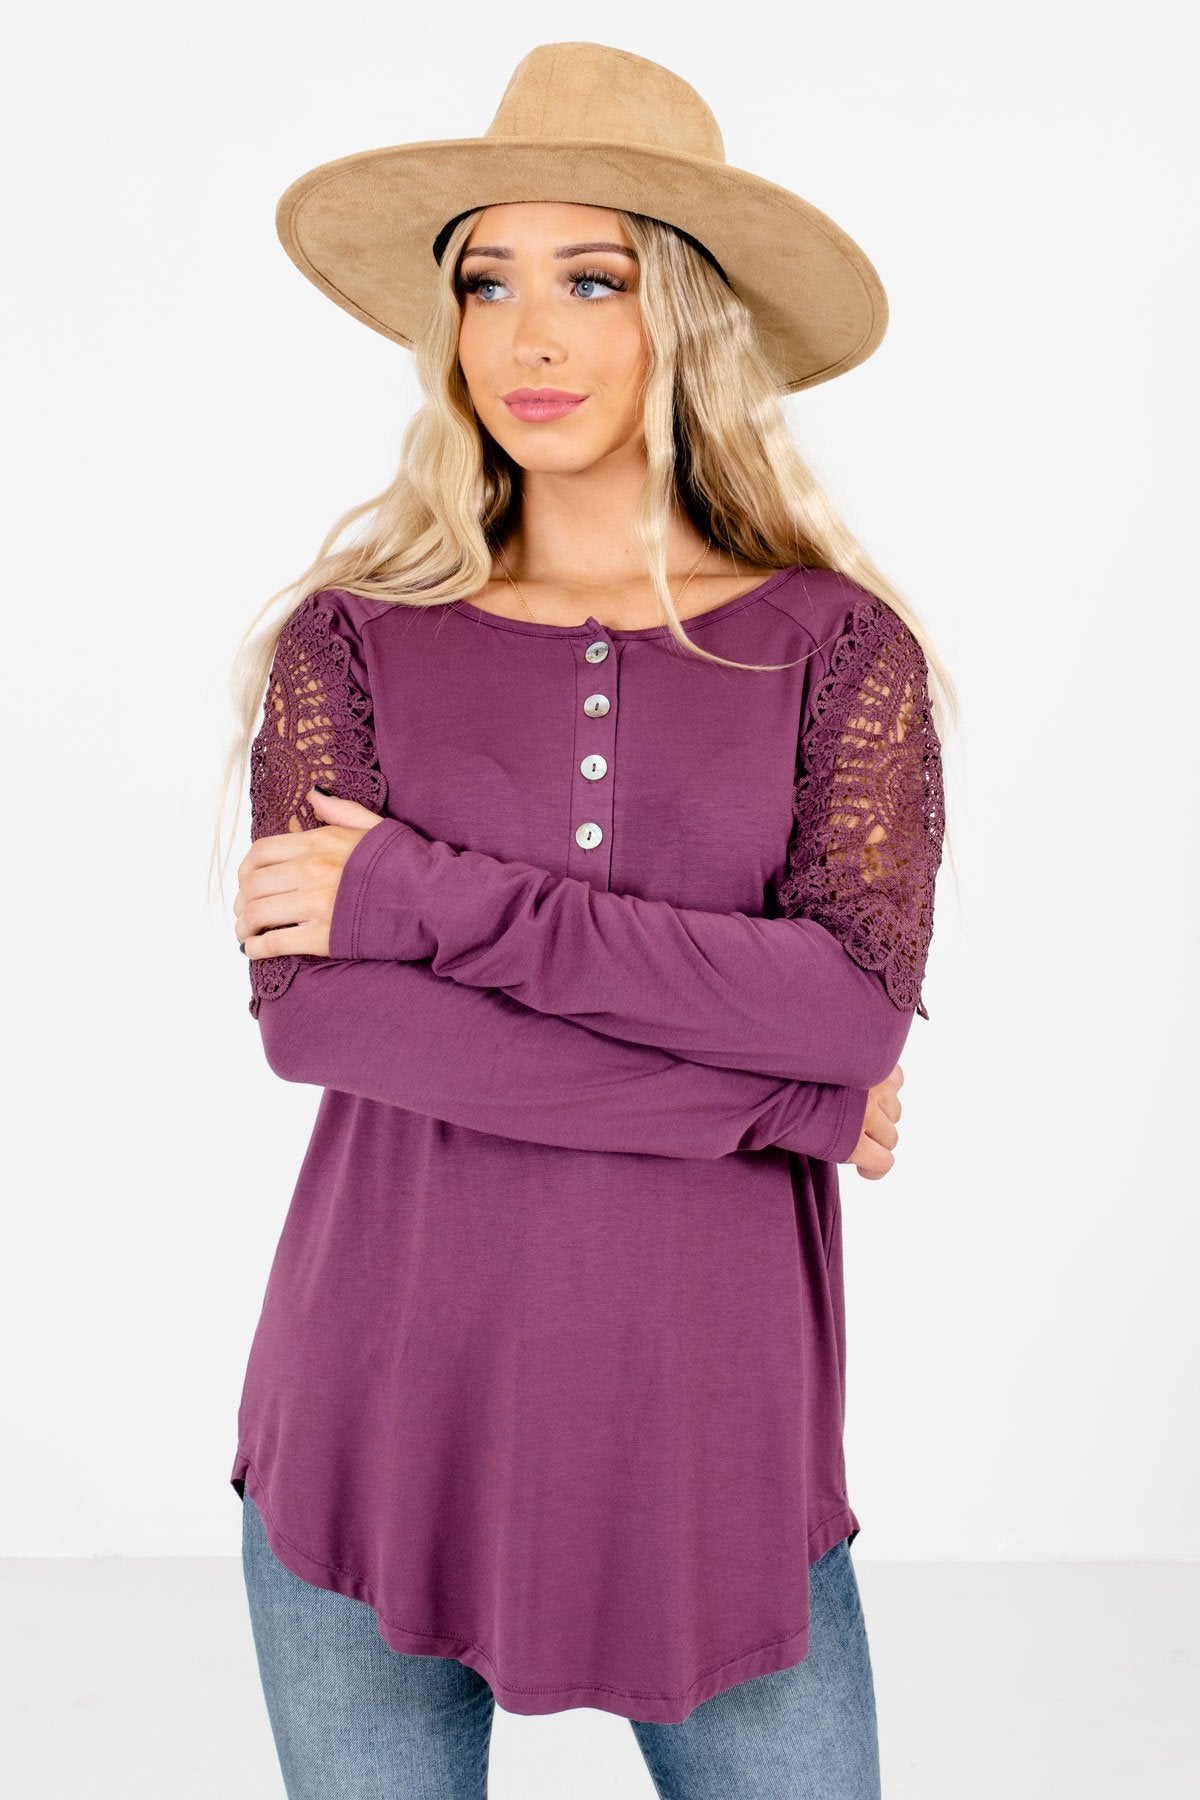 Women’s Purple Long Sleeve Boutique Tops